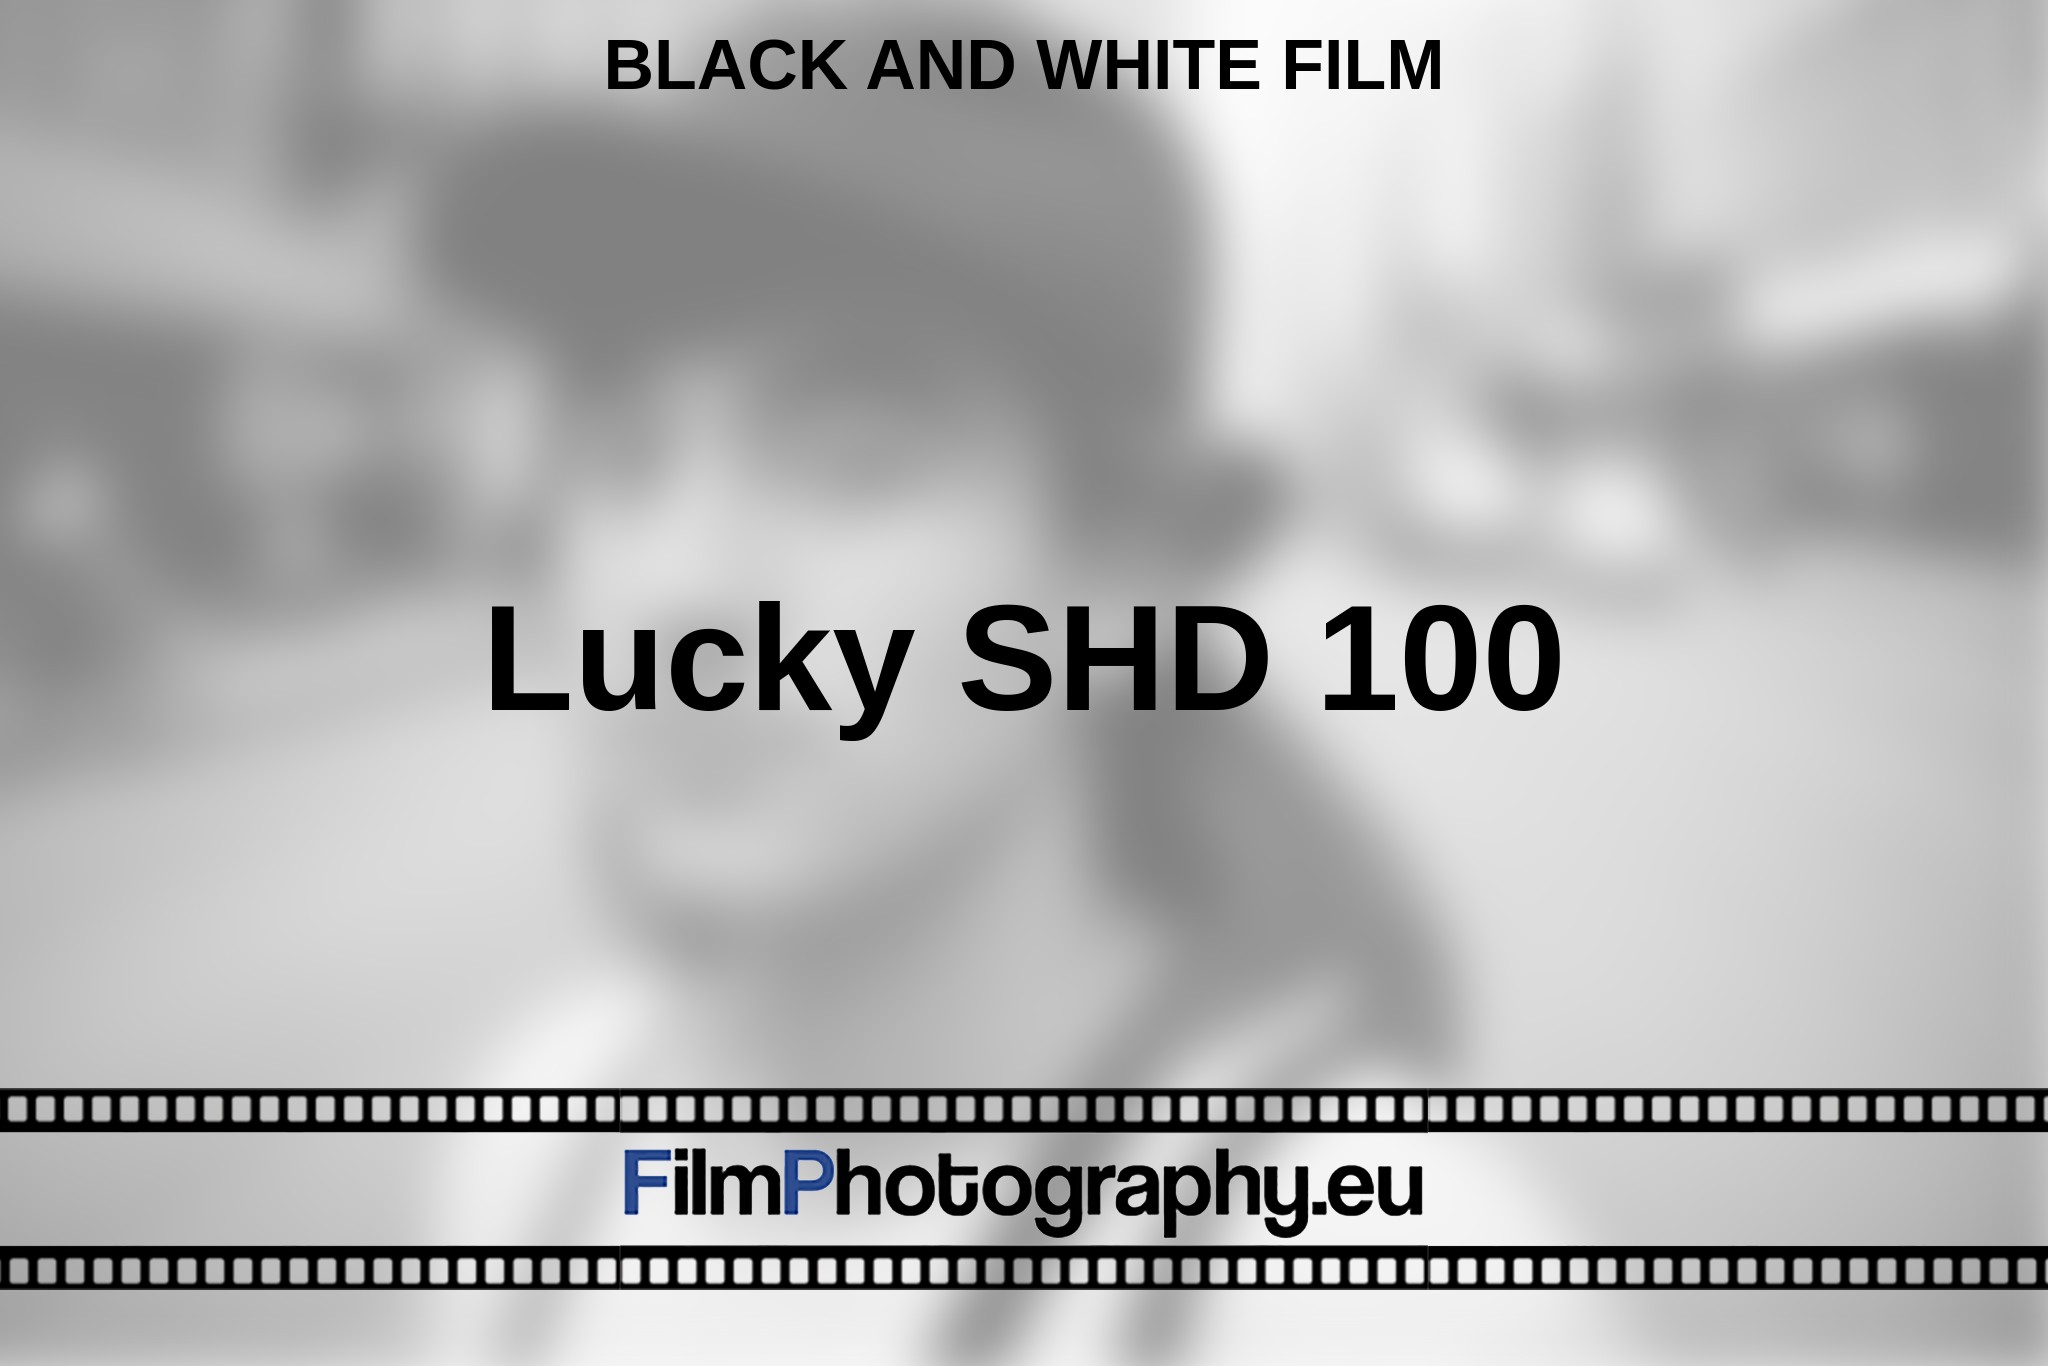 lucky-shd-100-black-and-white-film-en-bnv.jpg